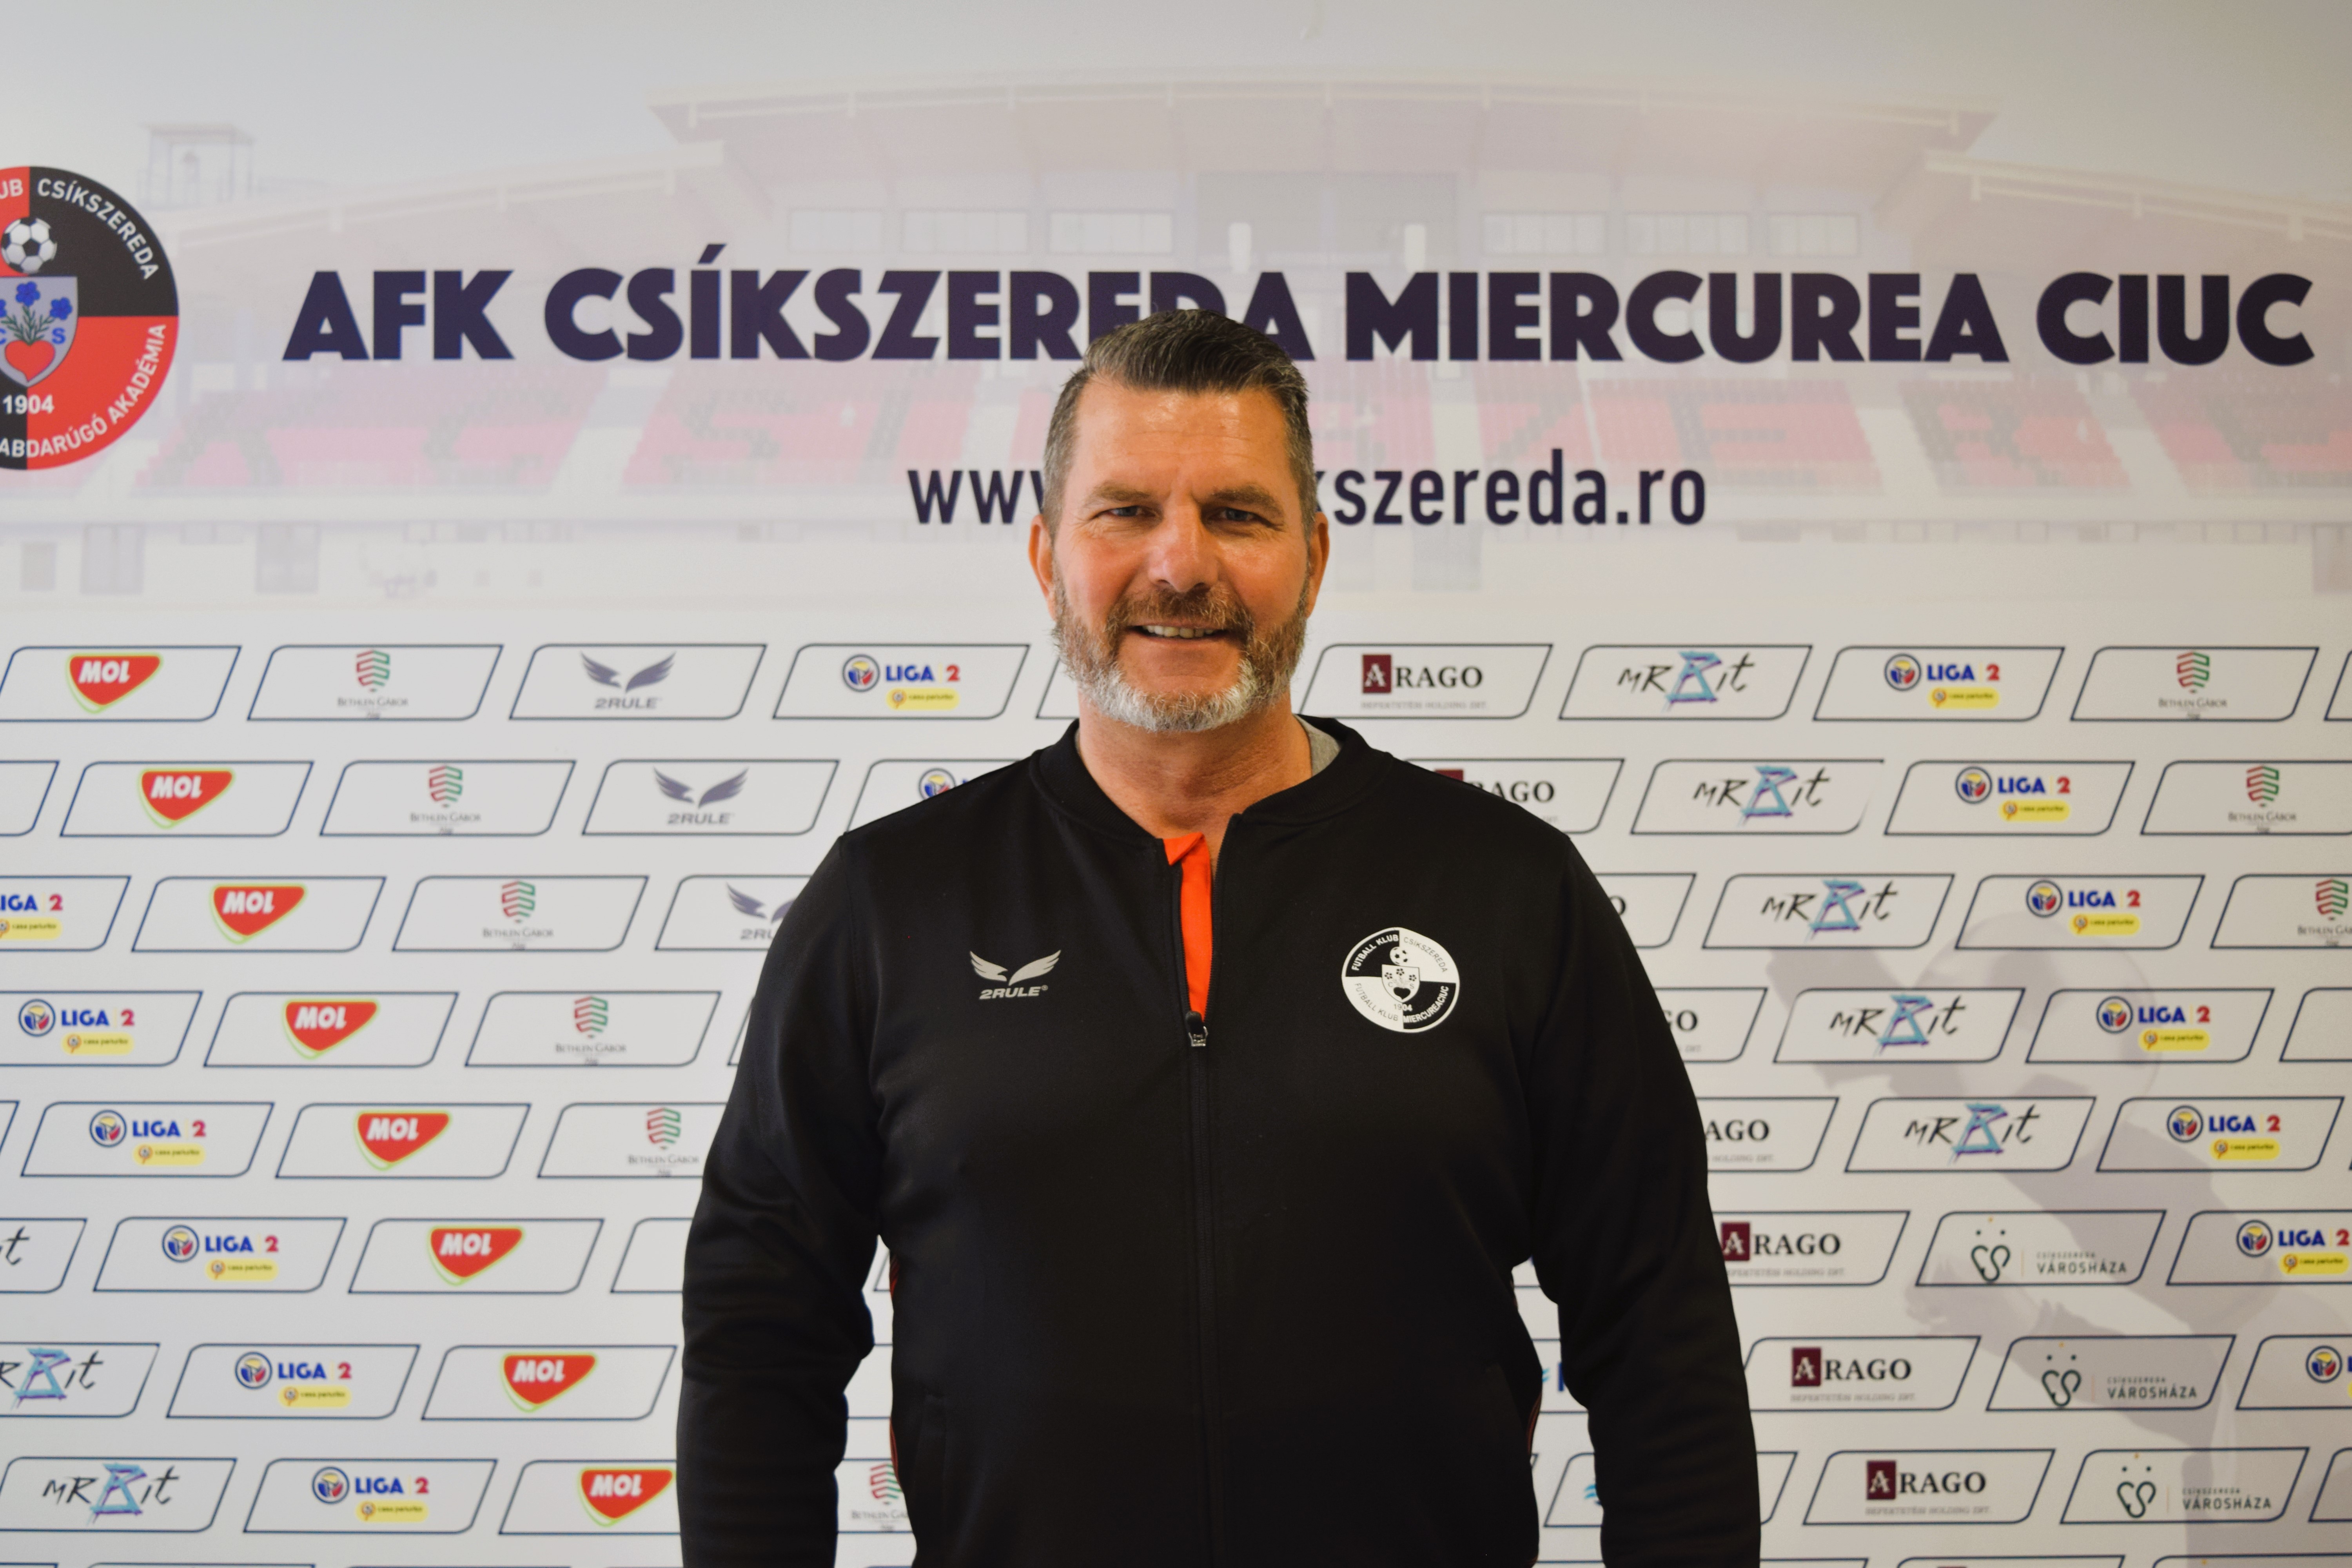 eFKások | Bemutatjuk Klink Zoltánt, a Székelyföld Labdarúgó Akadémia új sporttudományi és módszertani vezetőjét